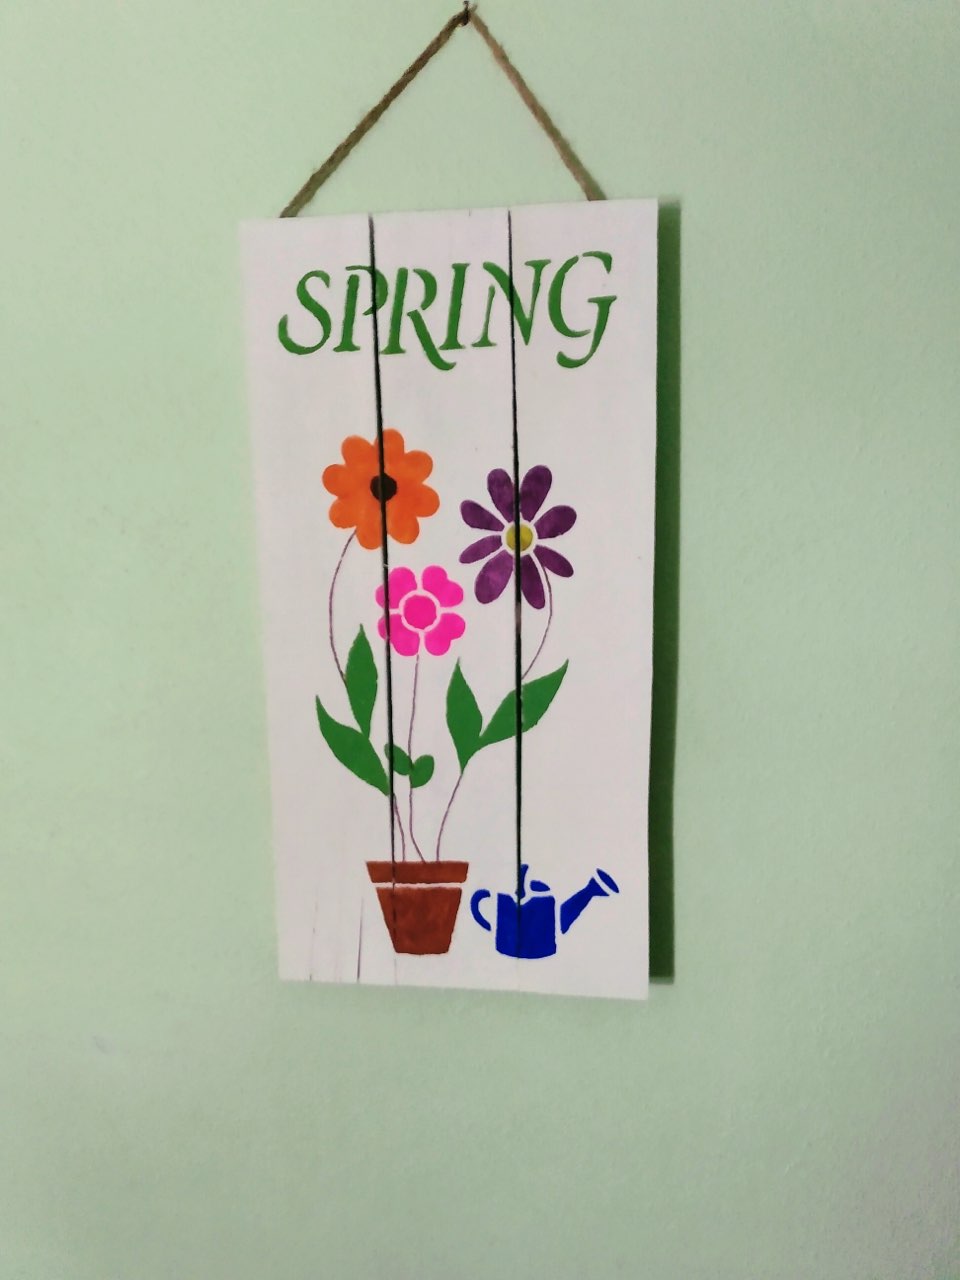 Spring-a pallet sign